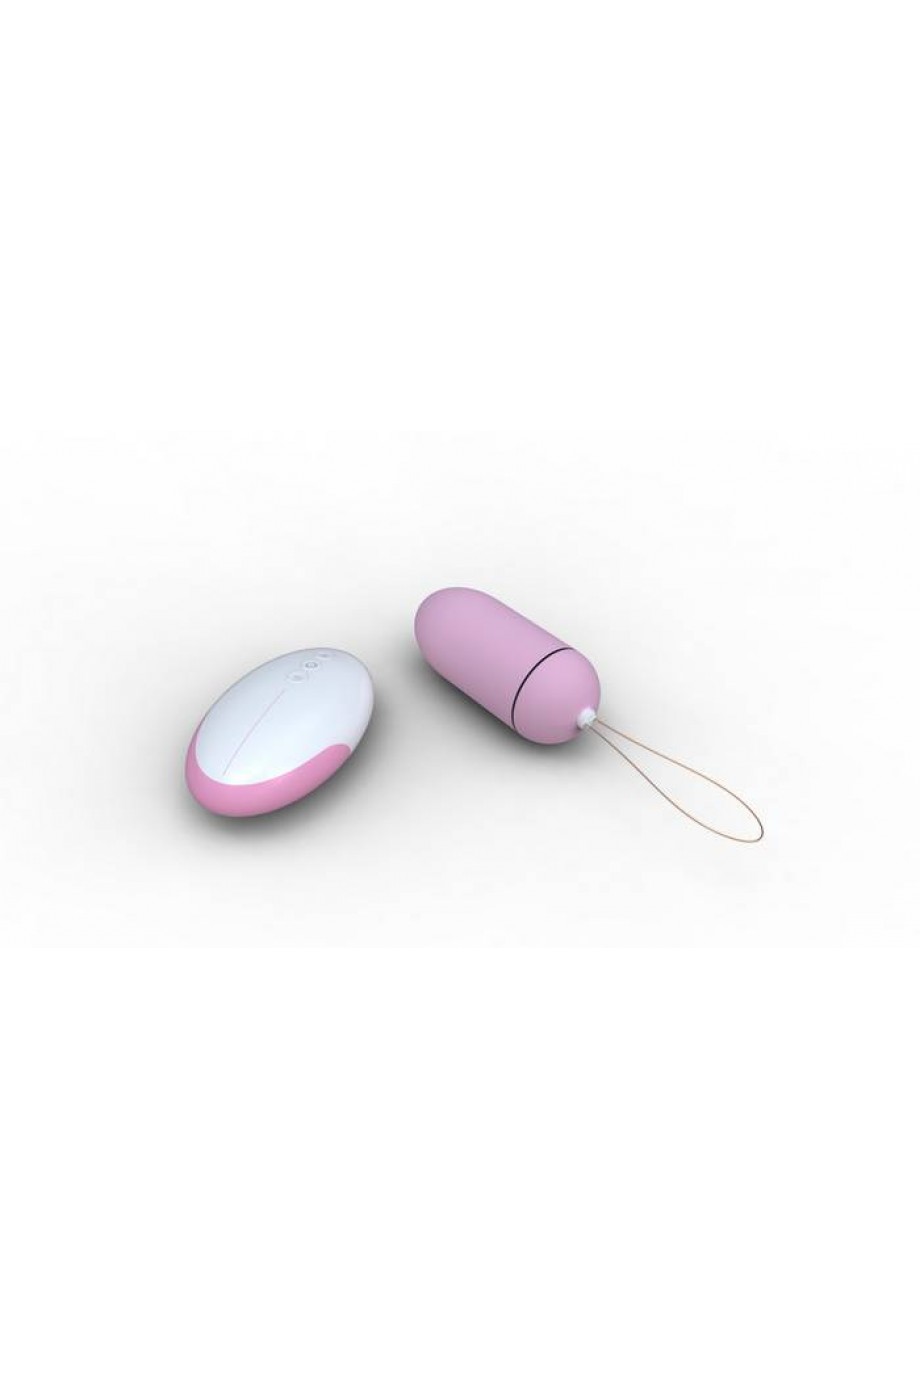 Виброяйцо Remote Control Egg розовое с пультом ДУ 8 см